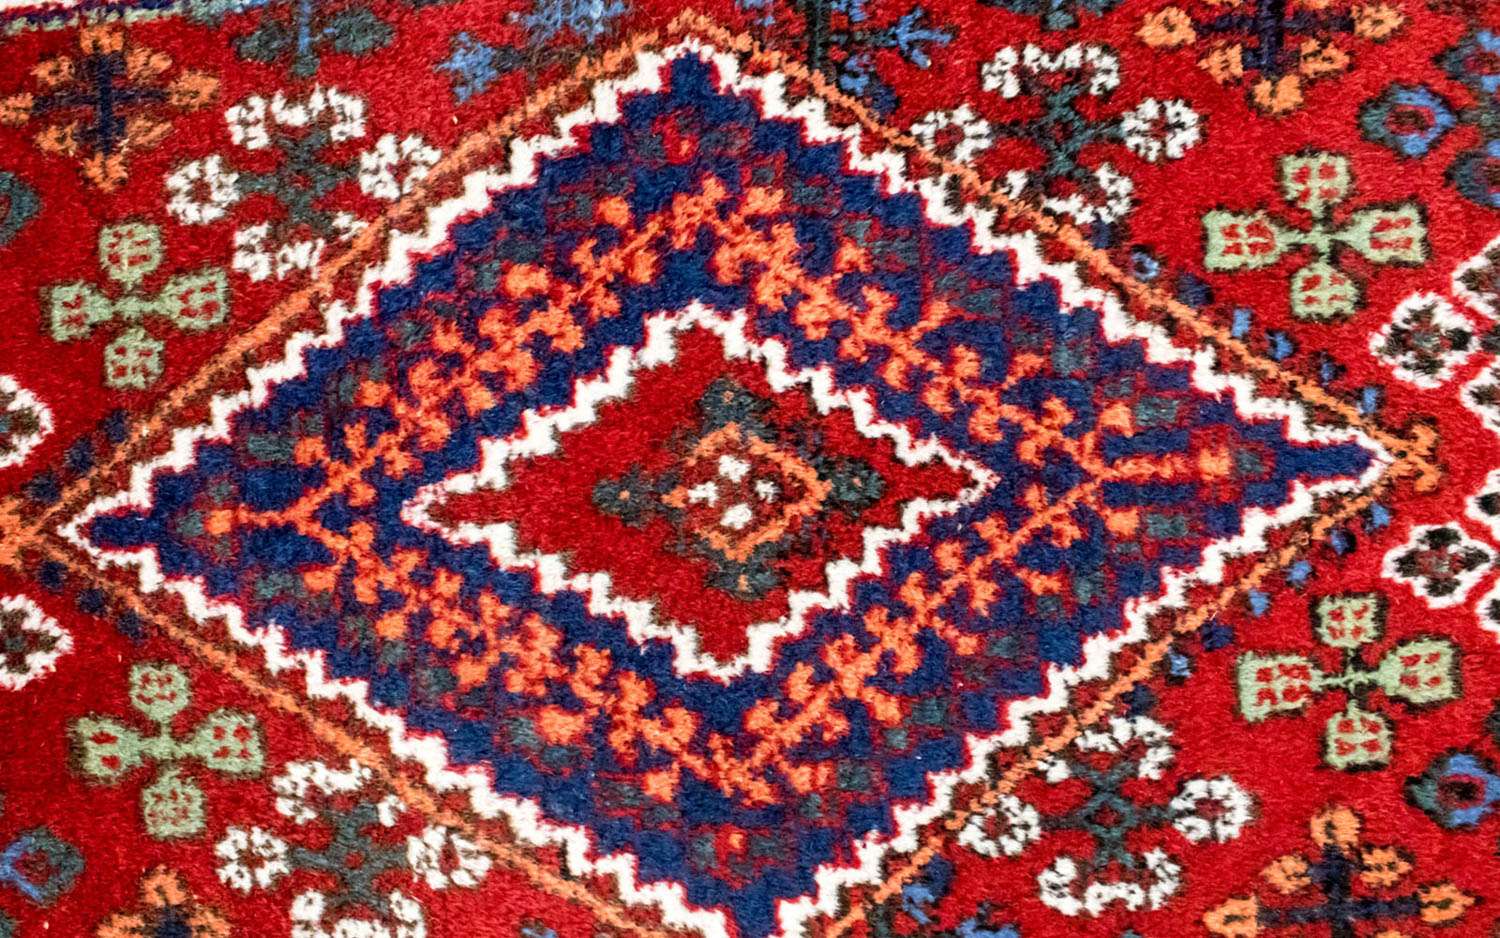 Løper Persisk teppe - Nomadisk - 163 x 57 cm - rød